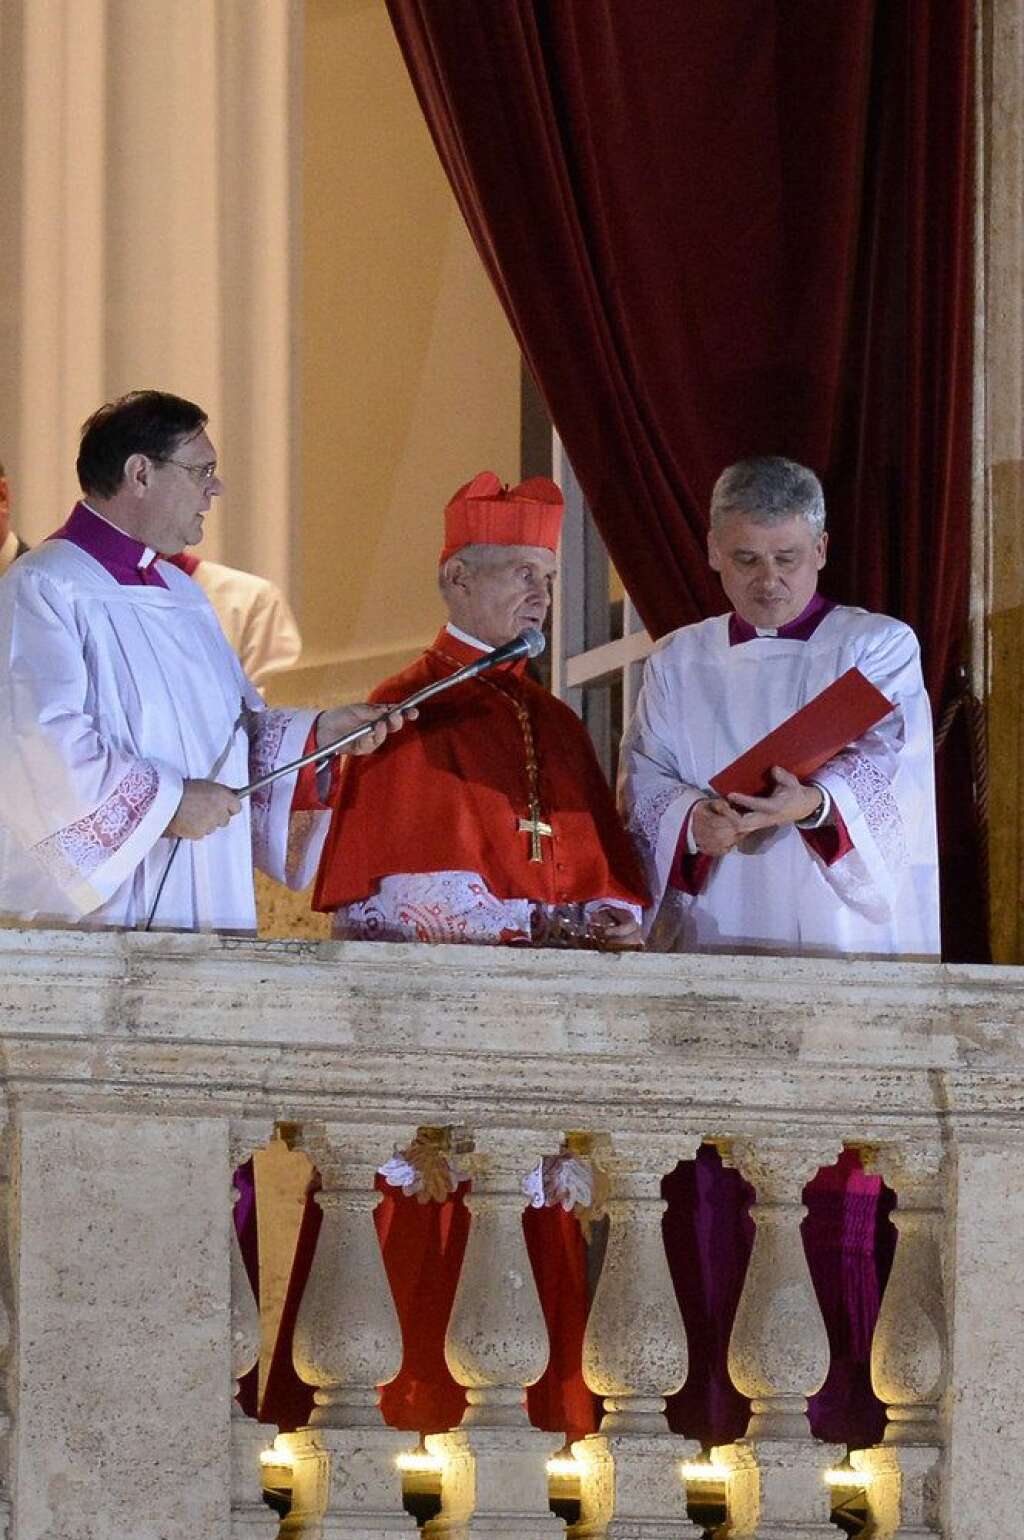 Puis l'annonce au balcon - Le cardinal français Jean-Louis Tauran annonce en latin à la foule rassemblée Place Saint-Pierre : "Habemus papam" suivi du nom Jorge Mario Bergoglio, le pape François.